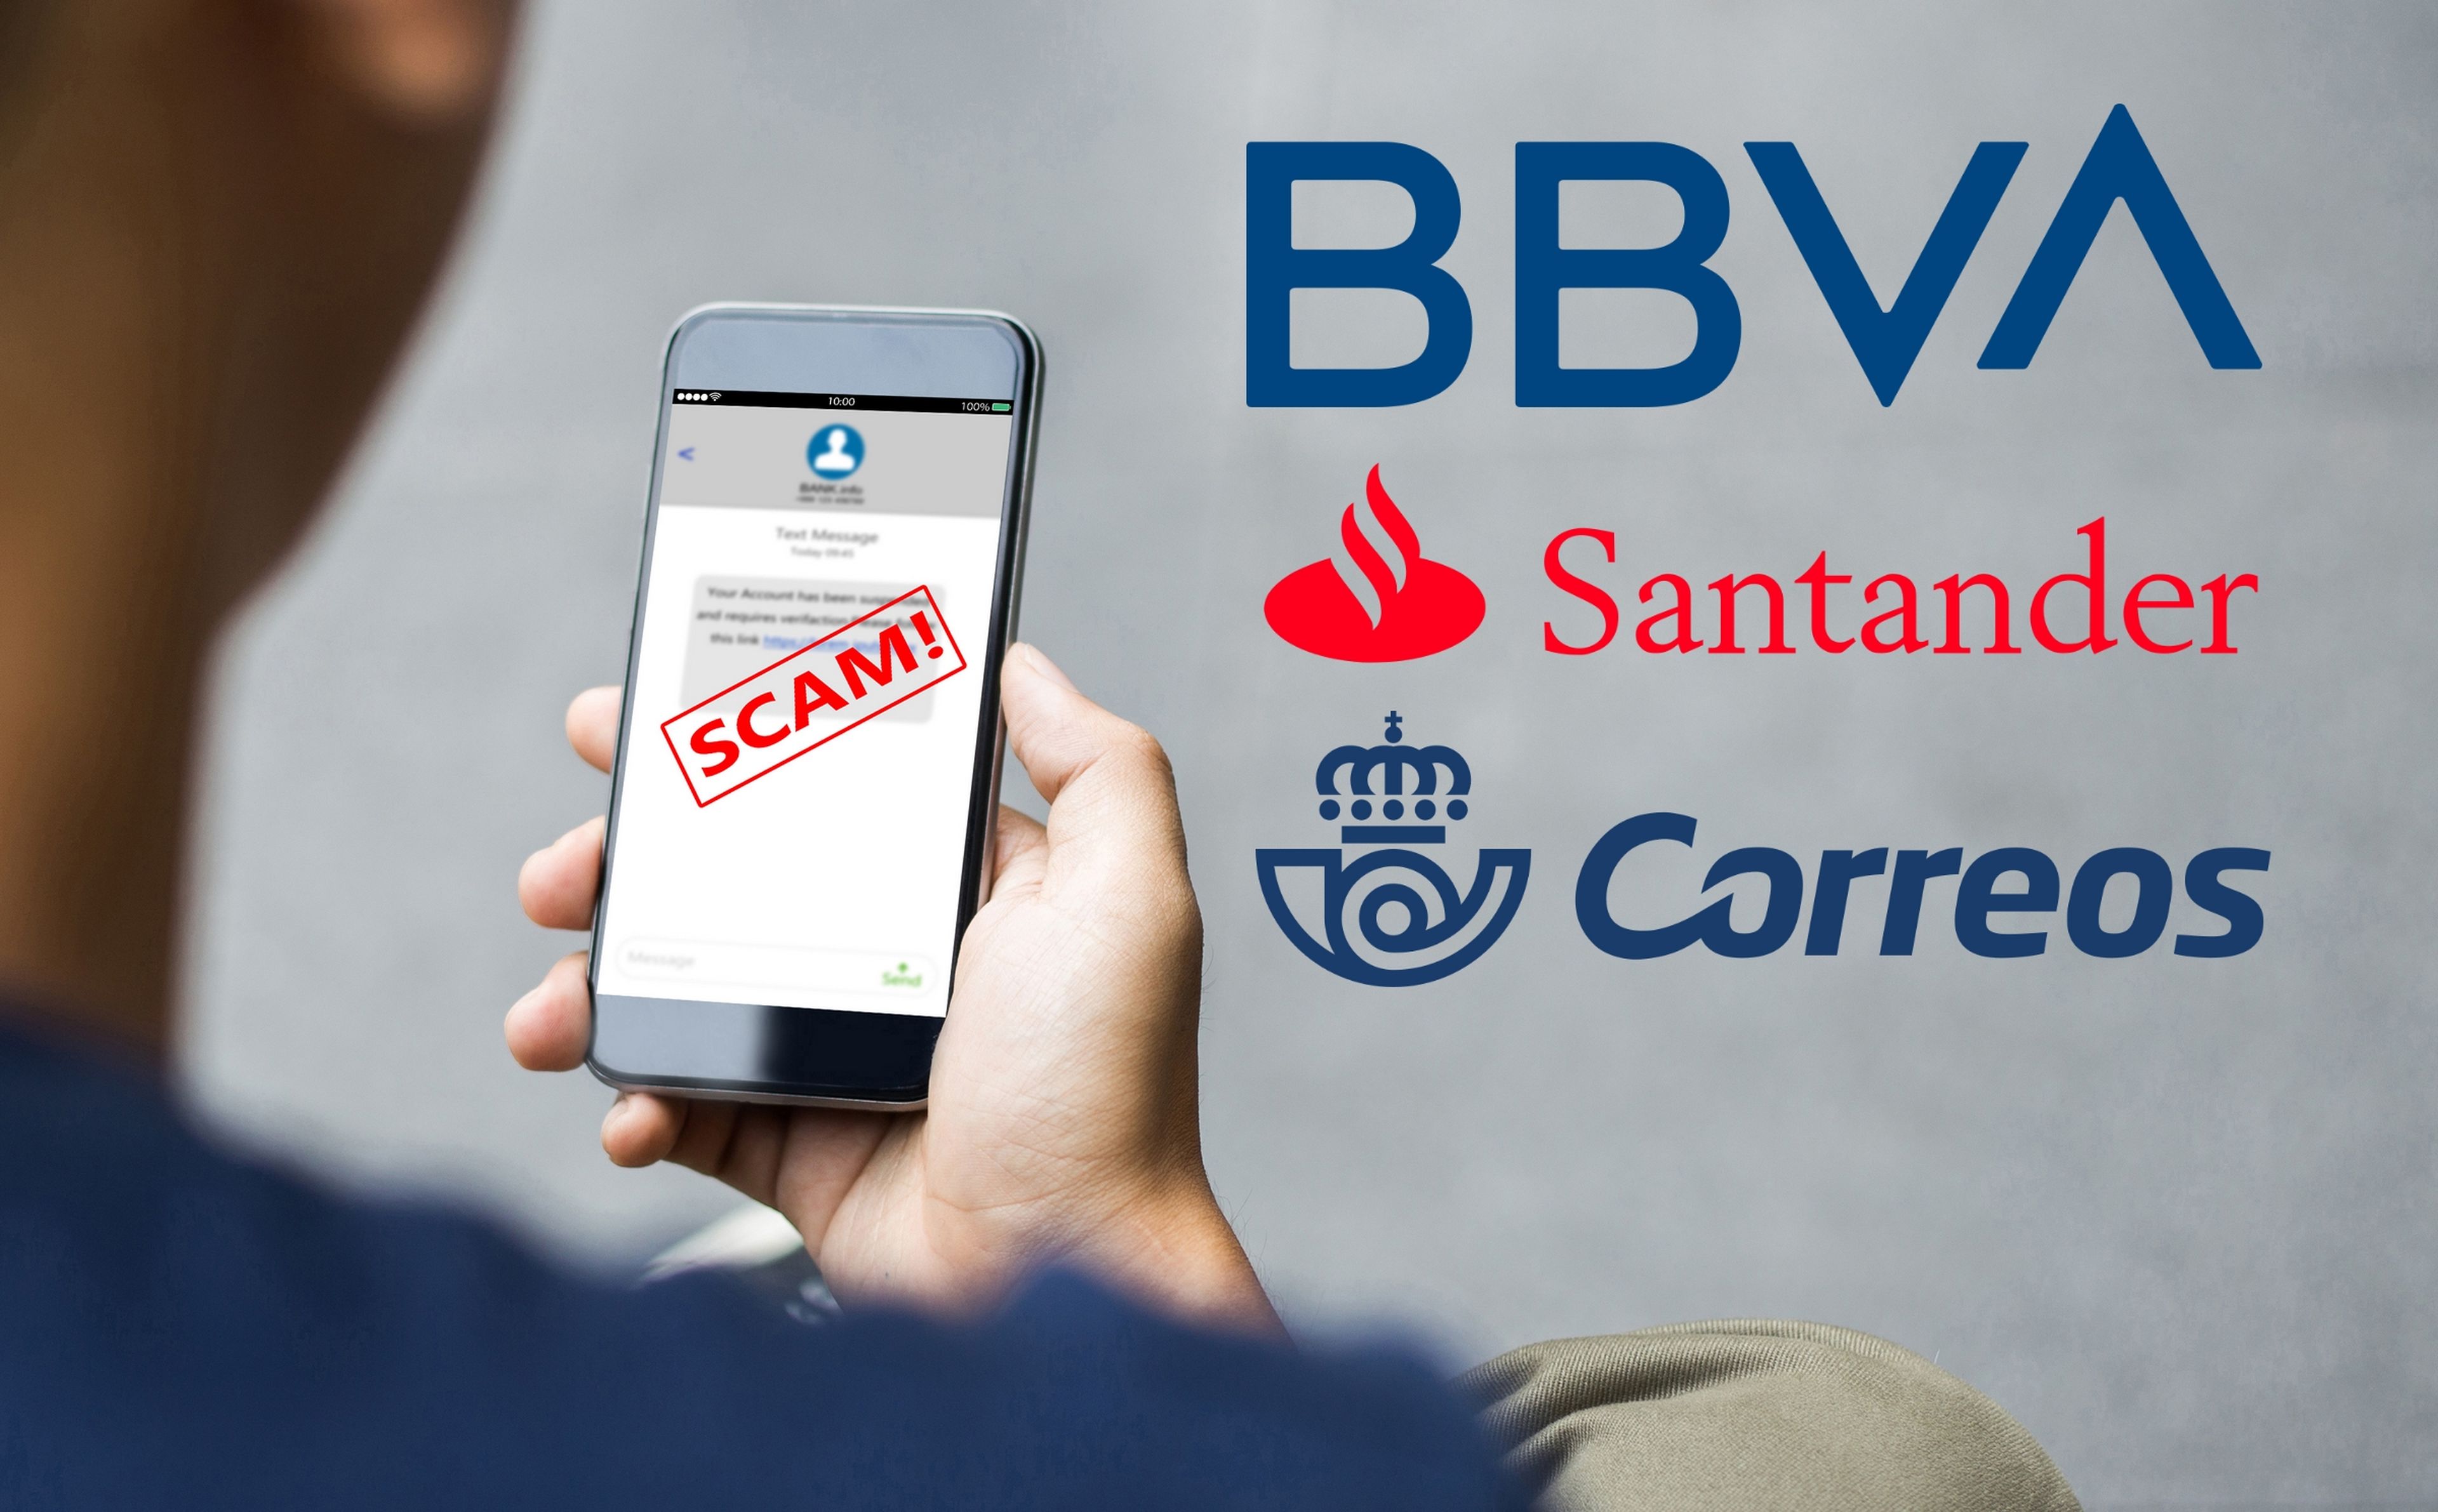 Cuidado con estos SMS del Banco del Santander, BBVA y Correos, son estafas o instalan malware